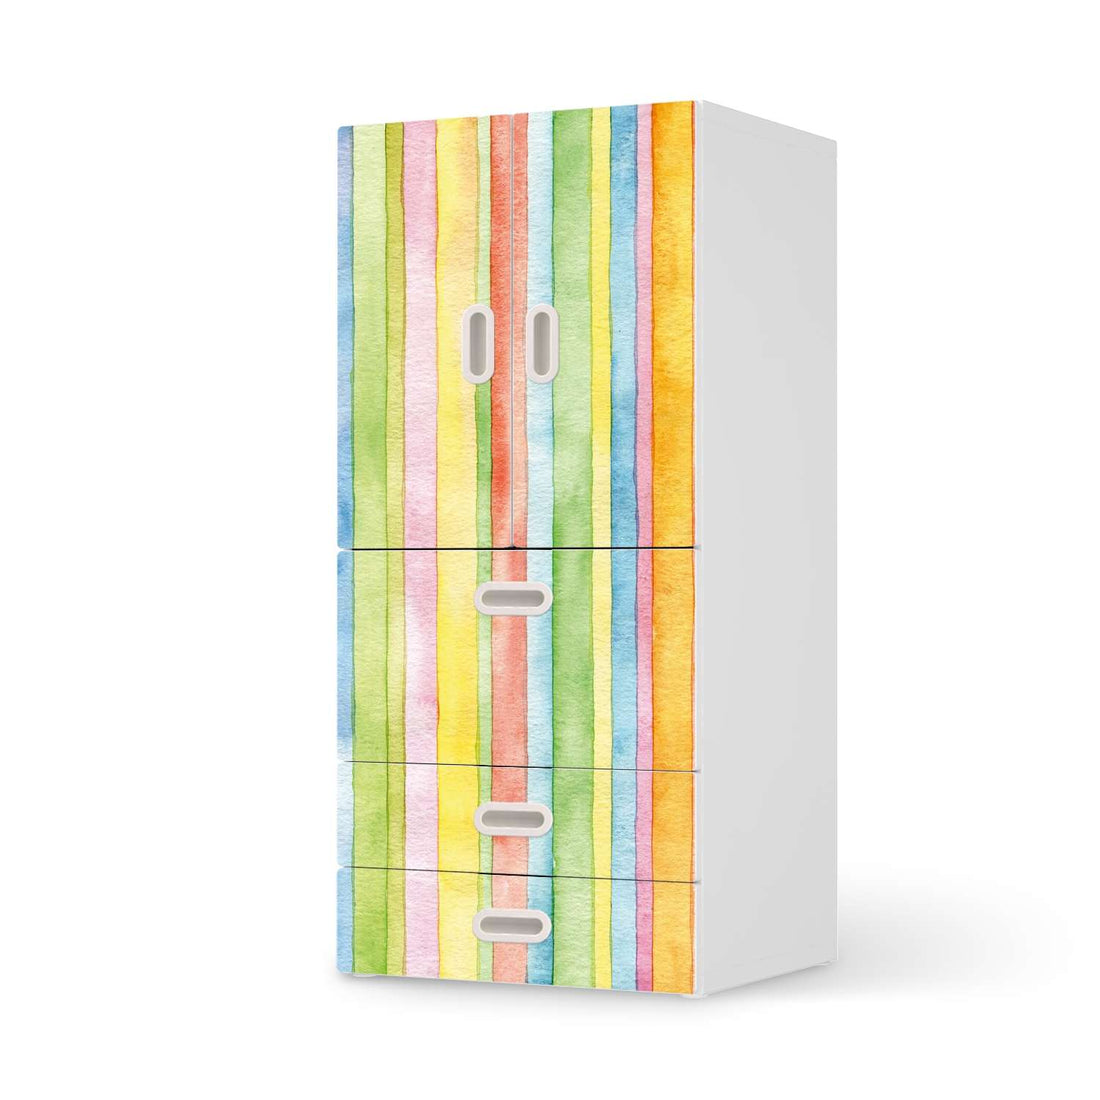 Möbelfolie Watercolor Stripes - IKEA Stuva / Fritids kombiniert - 3 Schubladen und 2 kleine Türen  - weiss